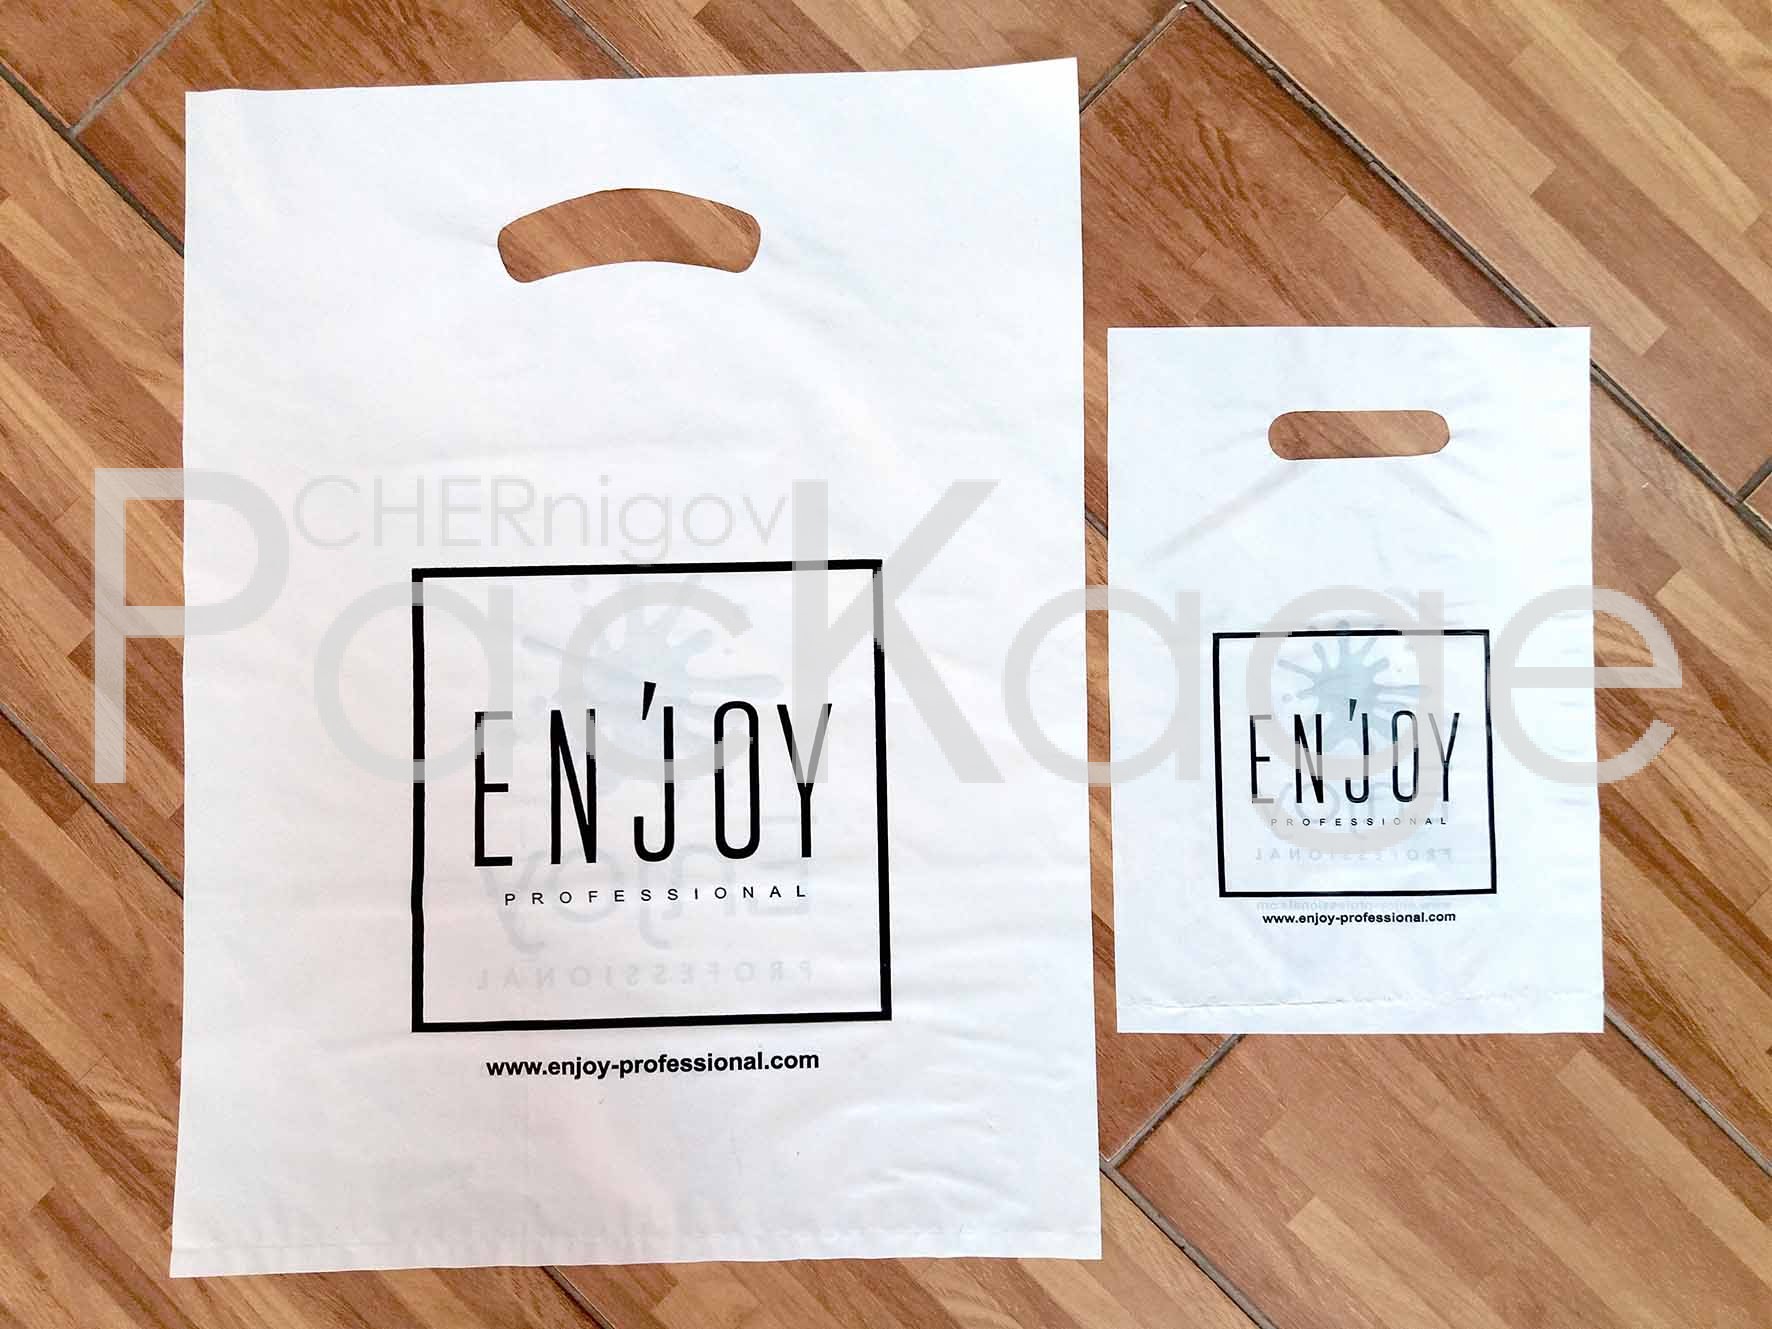 Виды пакетов для хранения одежды Chernigov Package - Фото 20180505_152724